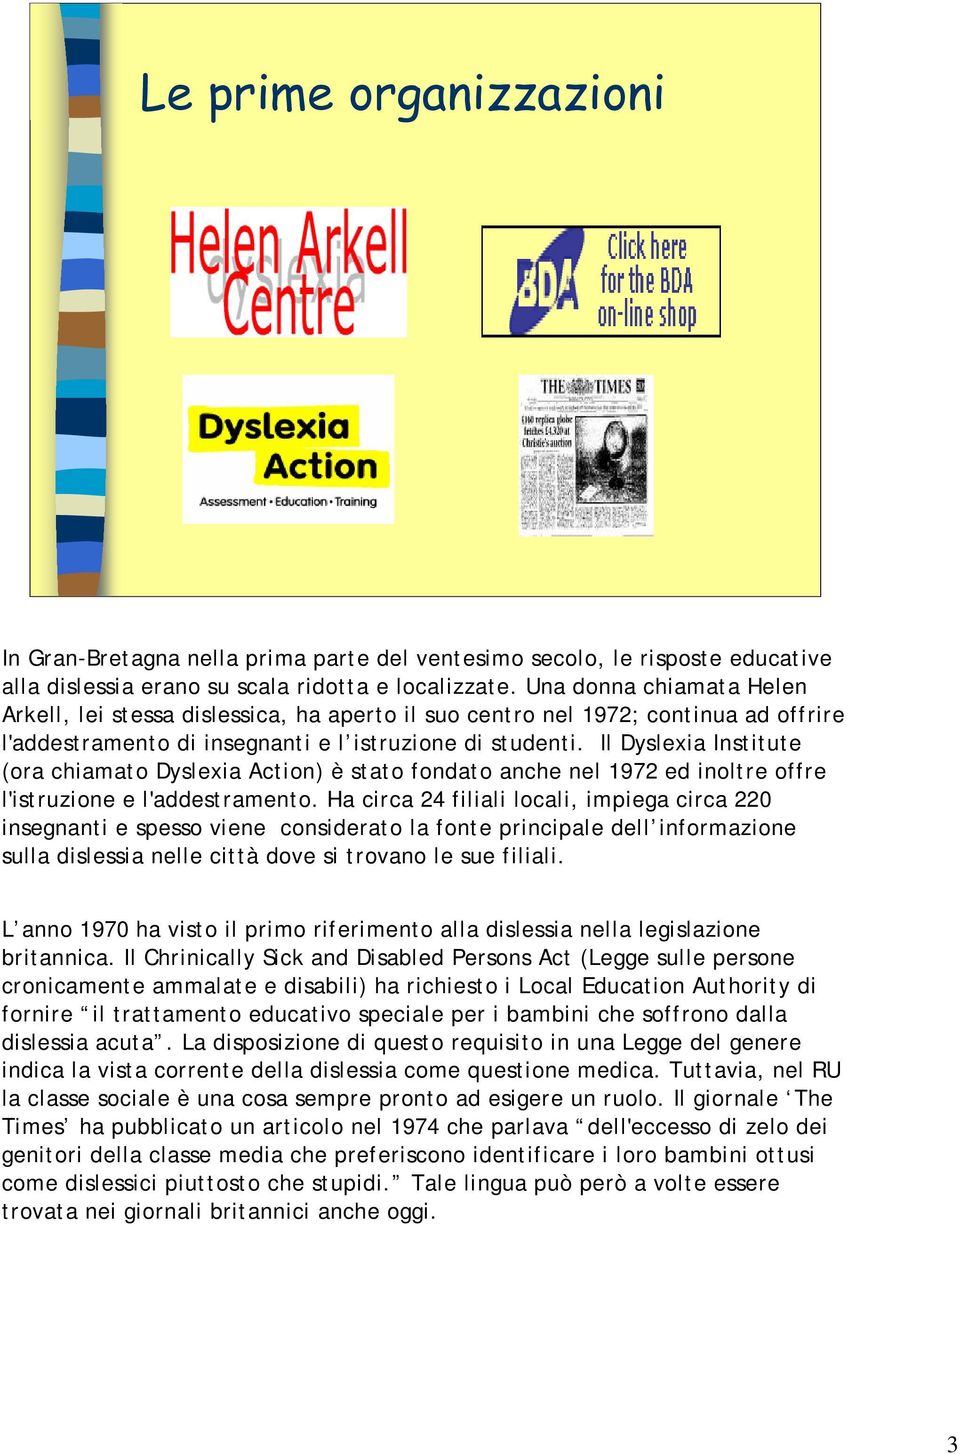 Il Dyslexia Institute (ora chiamato Dyslexia Action) è stato fondato anche nel 1972 ed inoltre offre l'istruzione e l'addestramento.